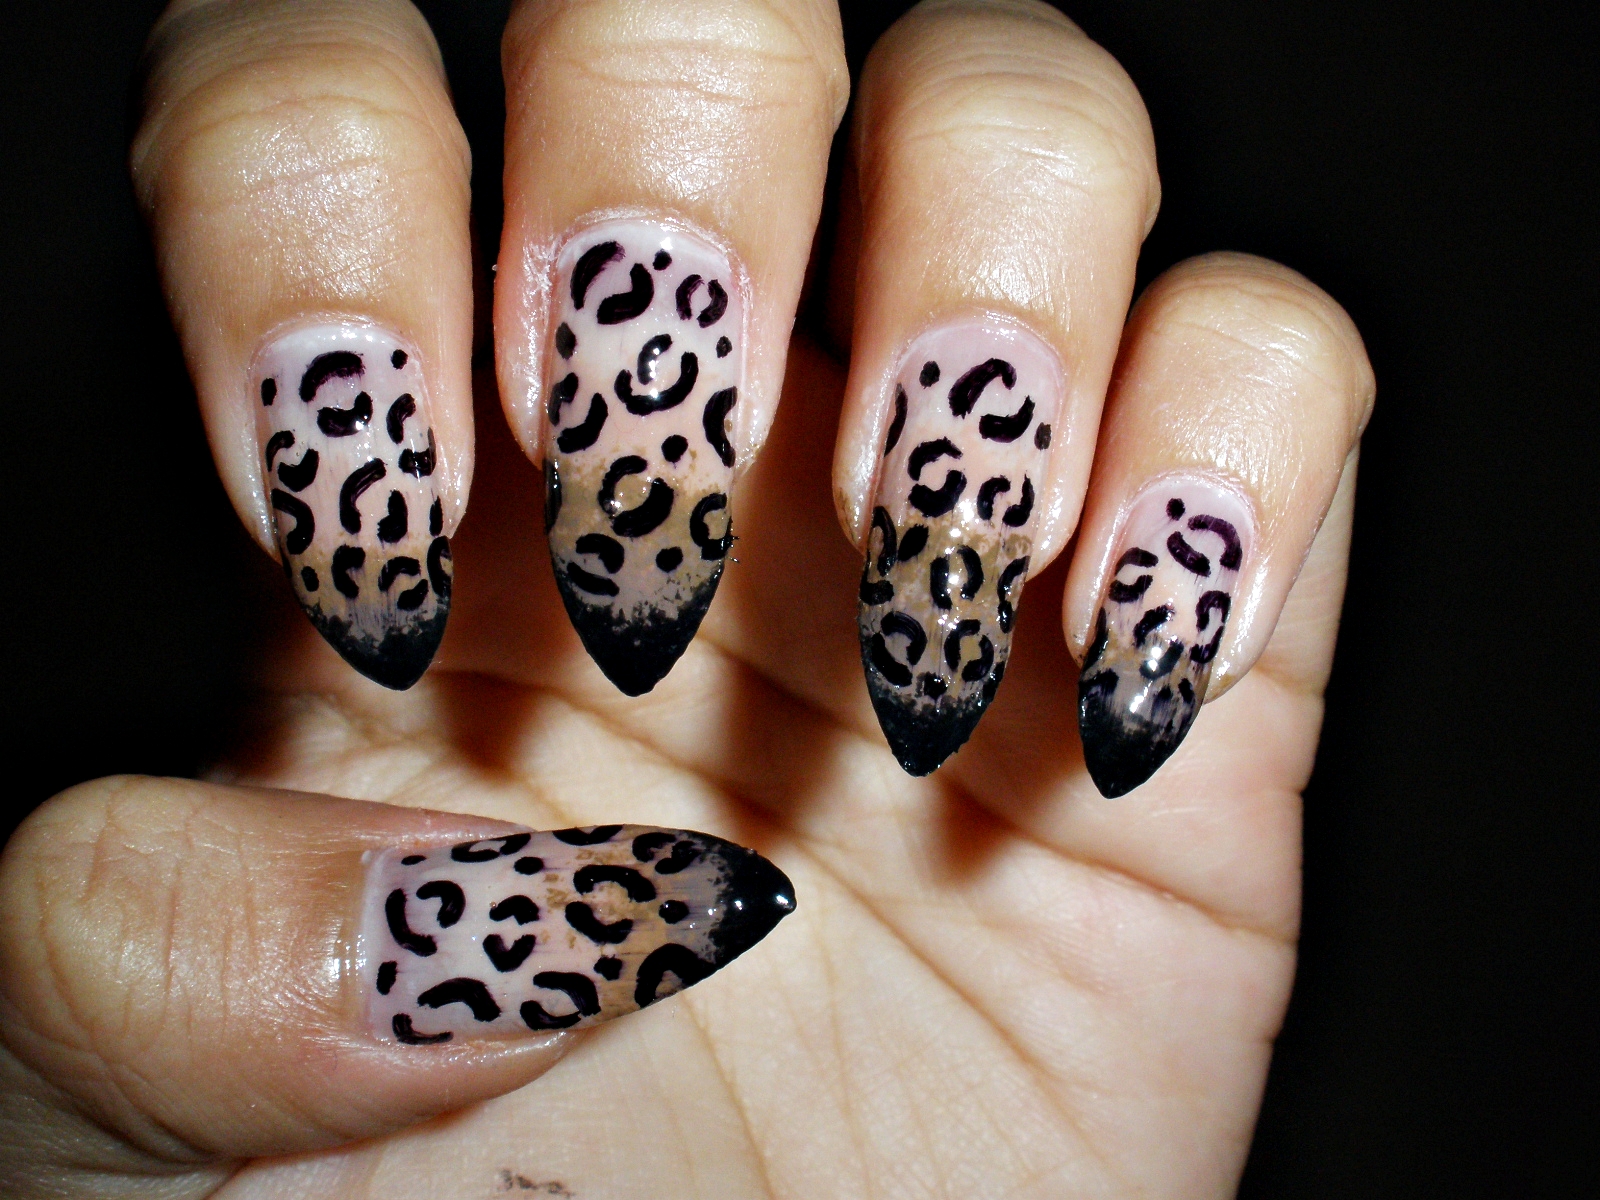 9. Cheetah Print Nail Designs for Long Nails - wide 2